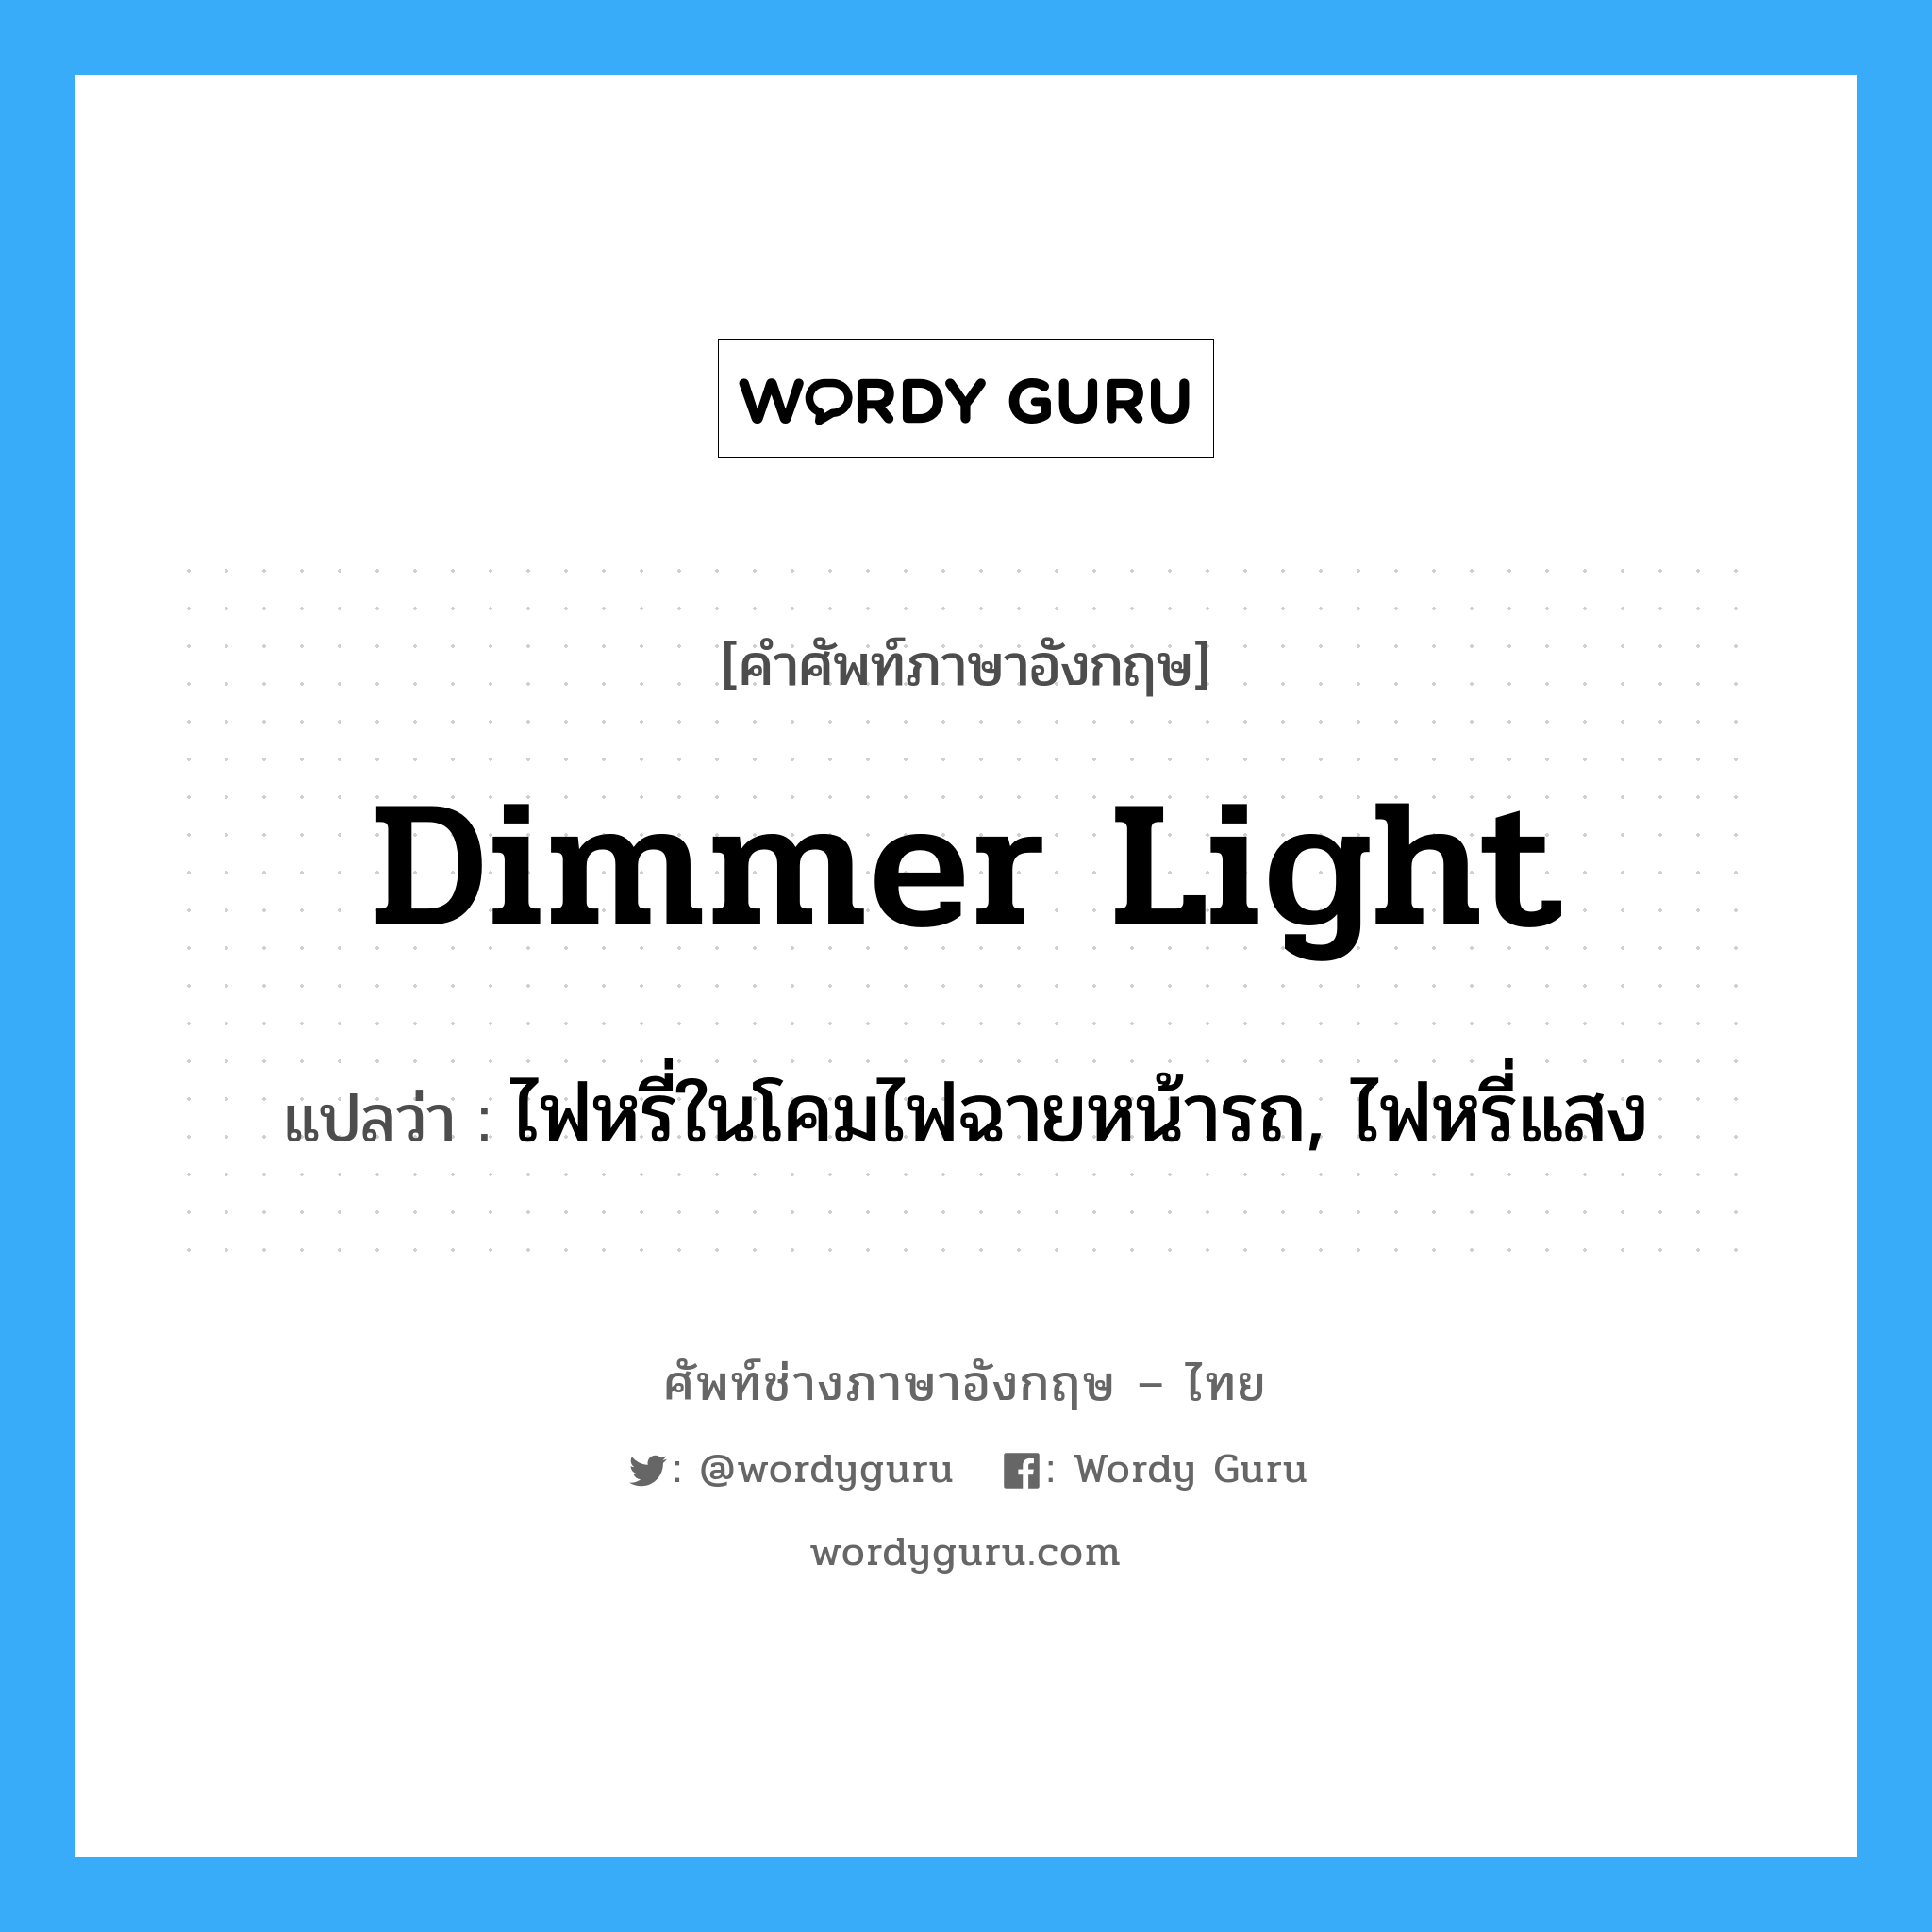 dimmer light แปลว่า?, คำศัพท์ช่างภาษาอังกฤษ - ไทย dimmer light คำศัพท์ภาษาอังกฤษ dimmer light แปลว่า ไฟหรี่ในโคมไฟฉายหน้ารถ, ไฟหรี่แสง